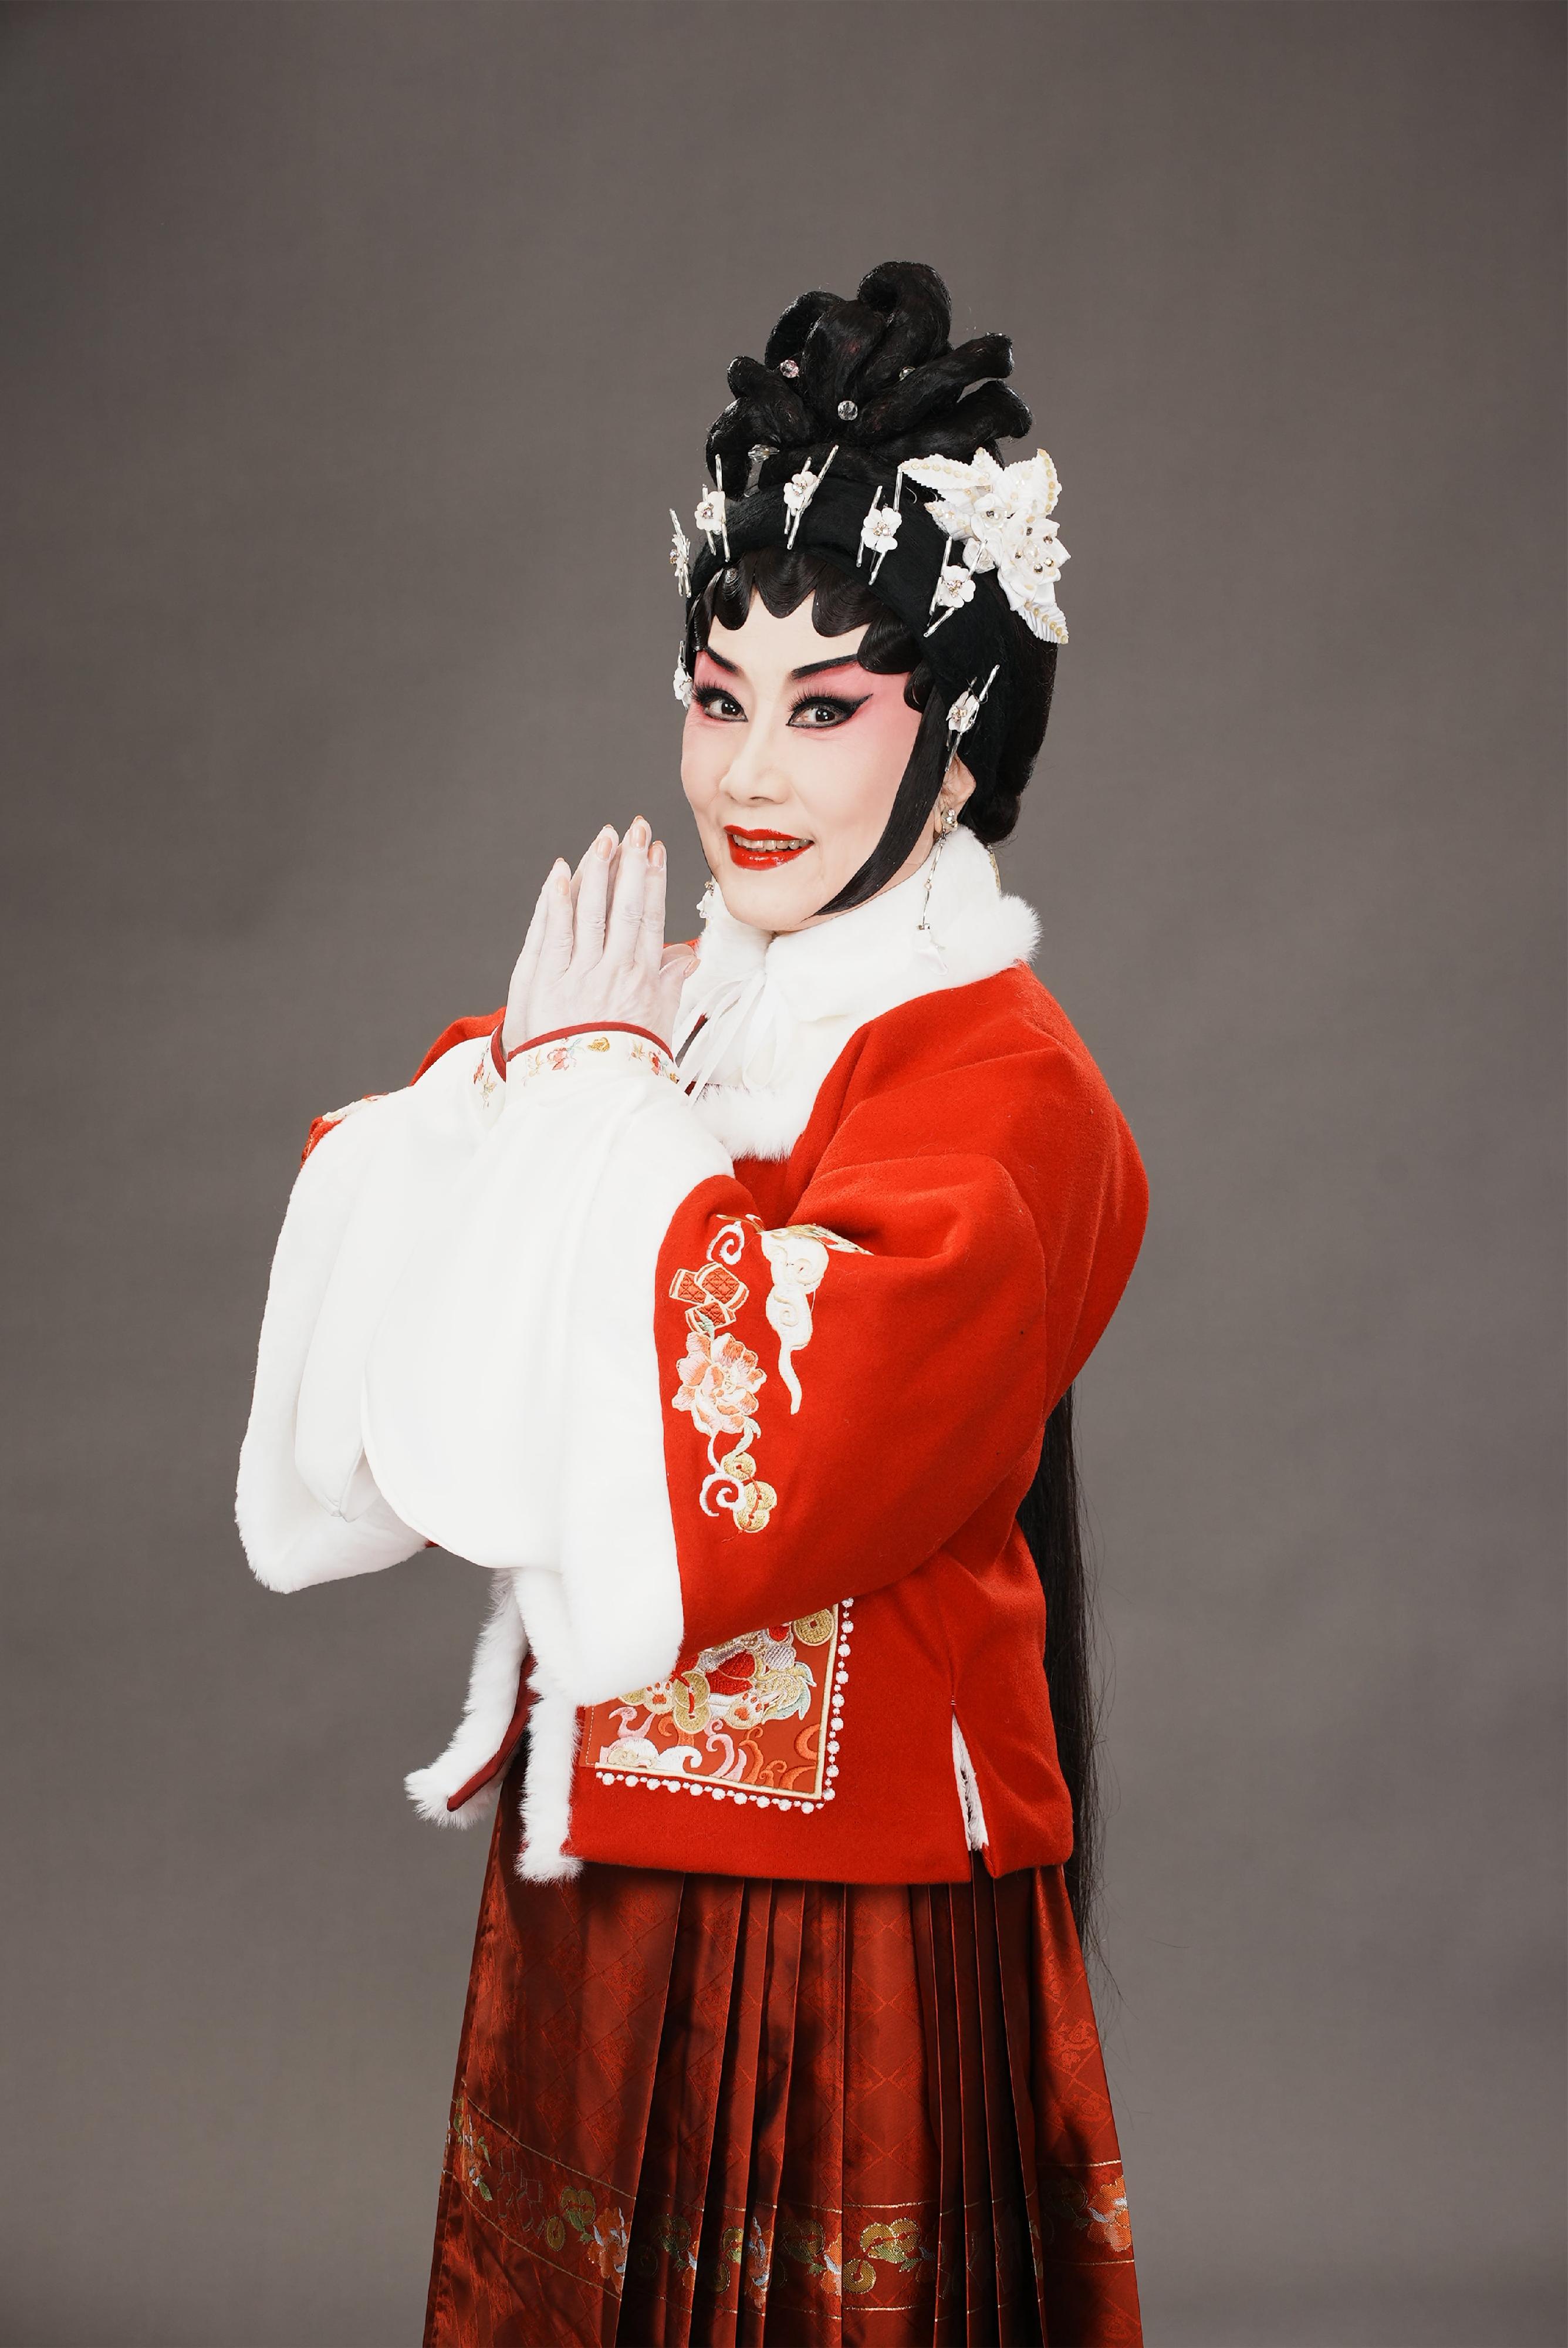 首届「中华文化节」将于六月中旬上演三场新编粤剧《大鼻子情圣》。图示粤剧名伶汪明荃。